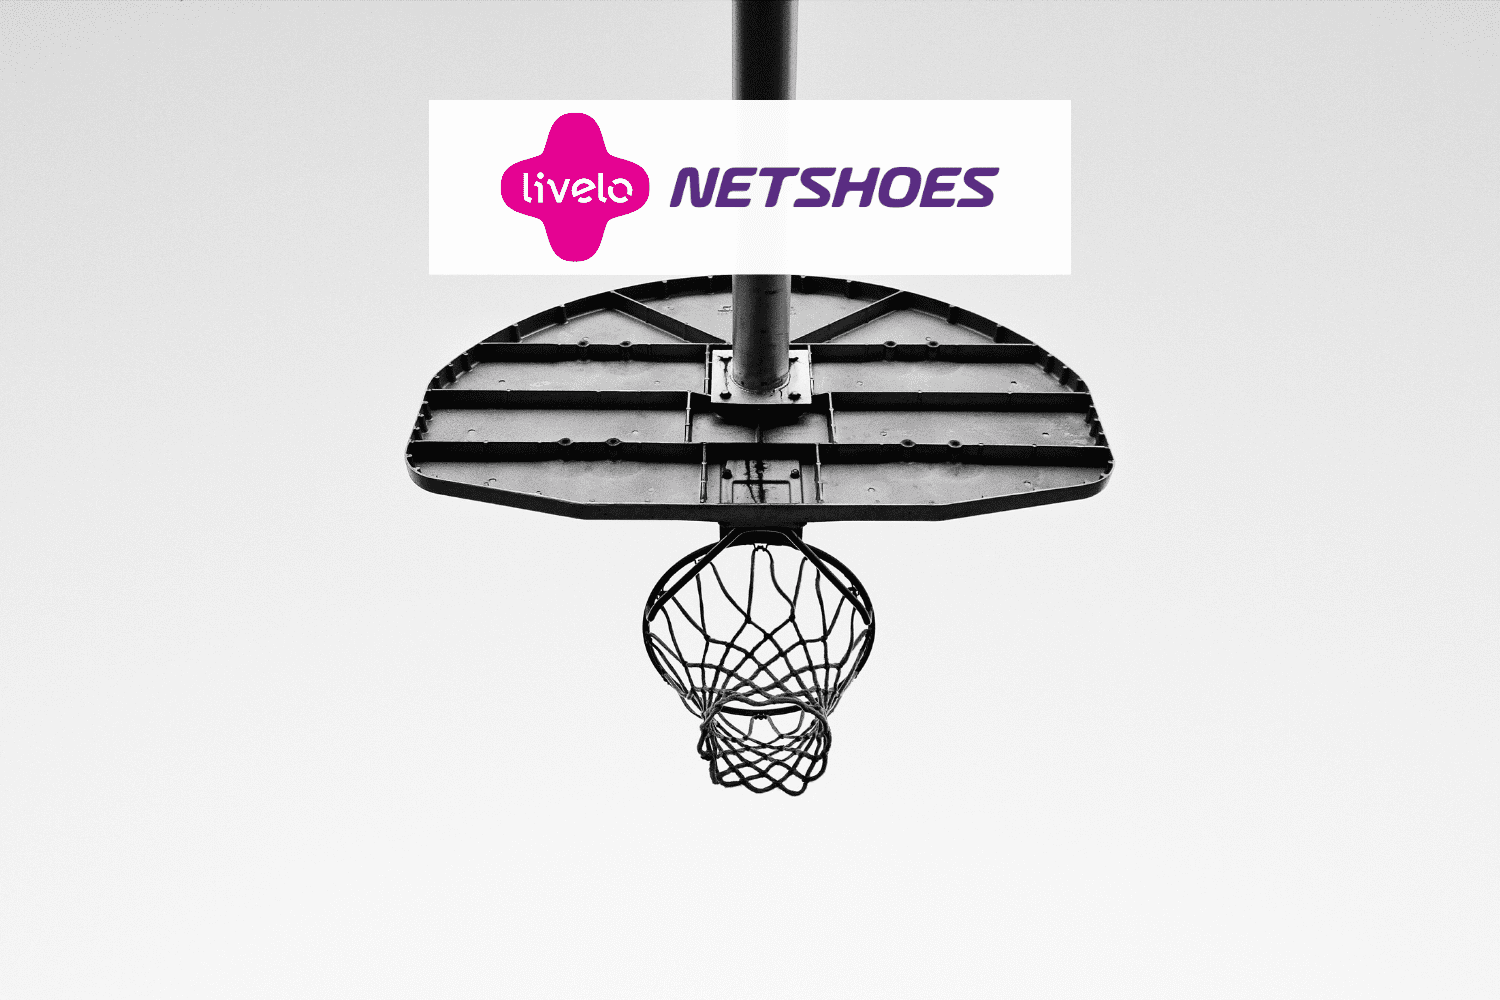 cesta de basquete com logo Livelo e Netshoes 8 pontos Livelo